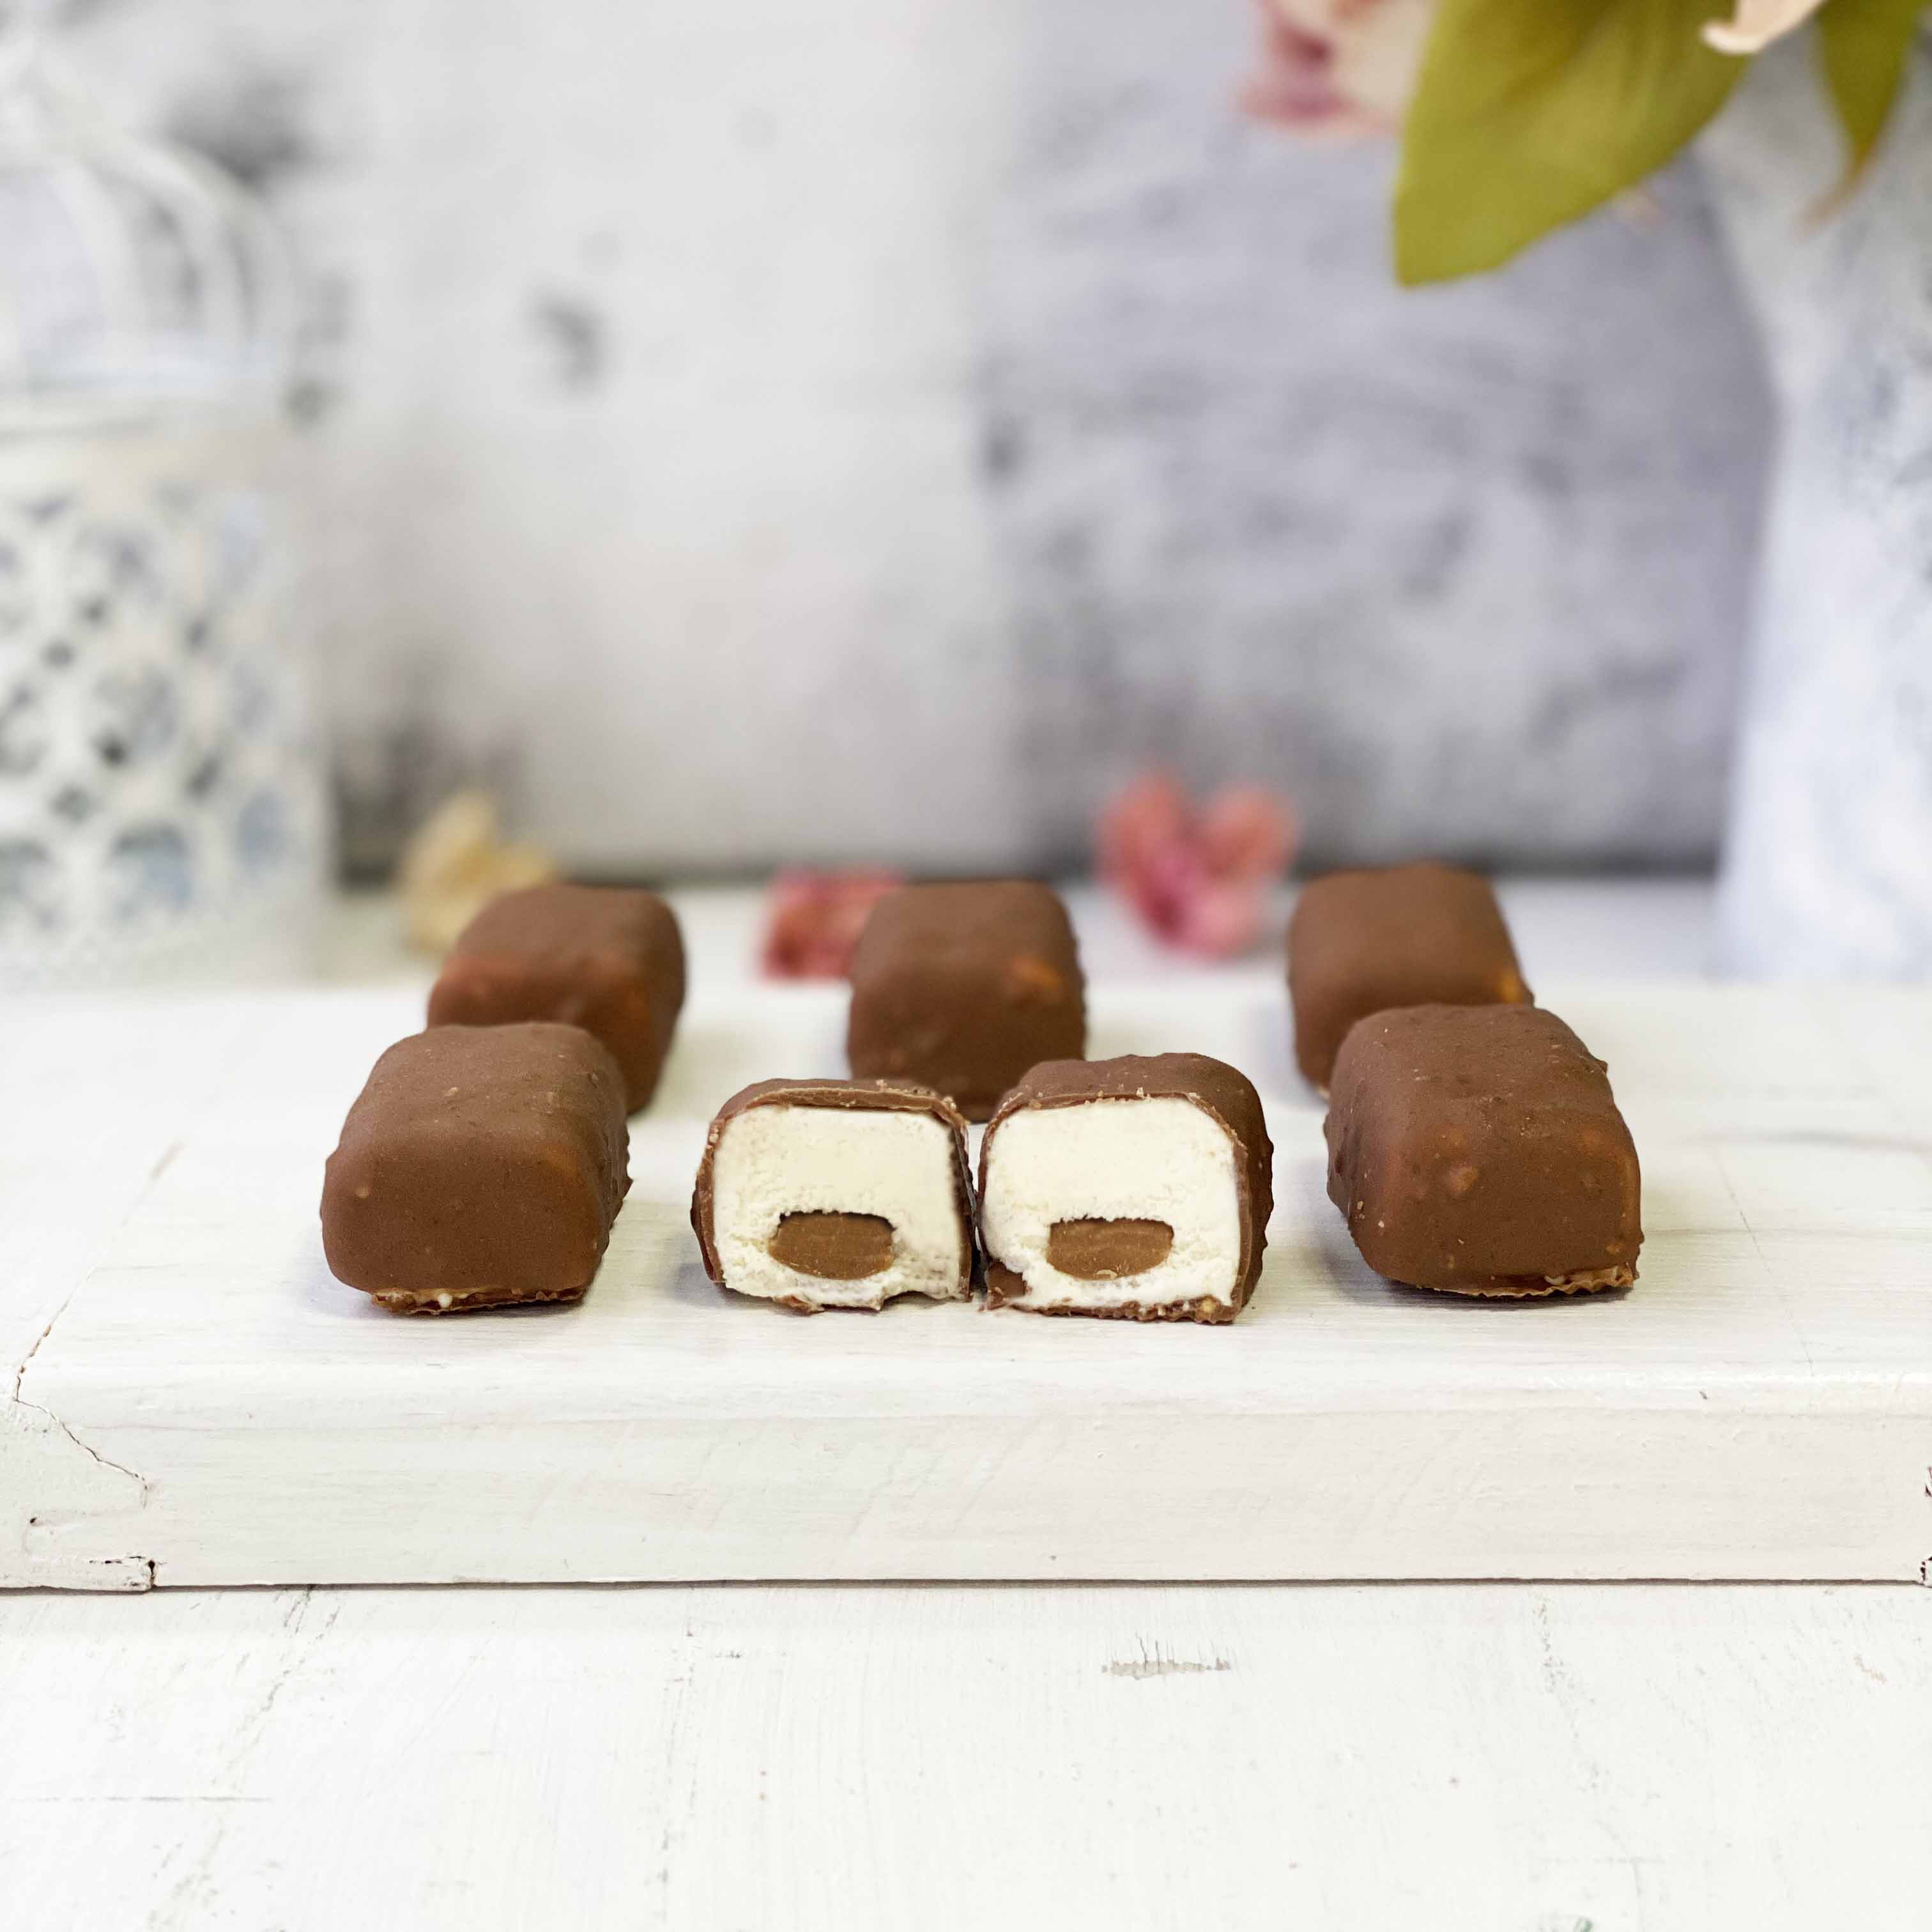 Шоколадные конфеты из ванильного мороженого со вкусом лесного ореха с добавлением сахарного миндаля и фундука, покрытые молочным шоколадом. изображение 1